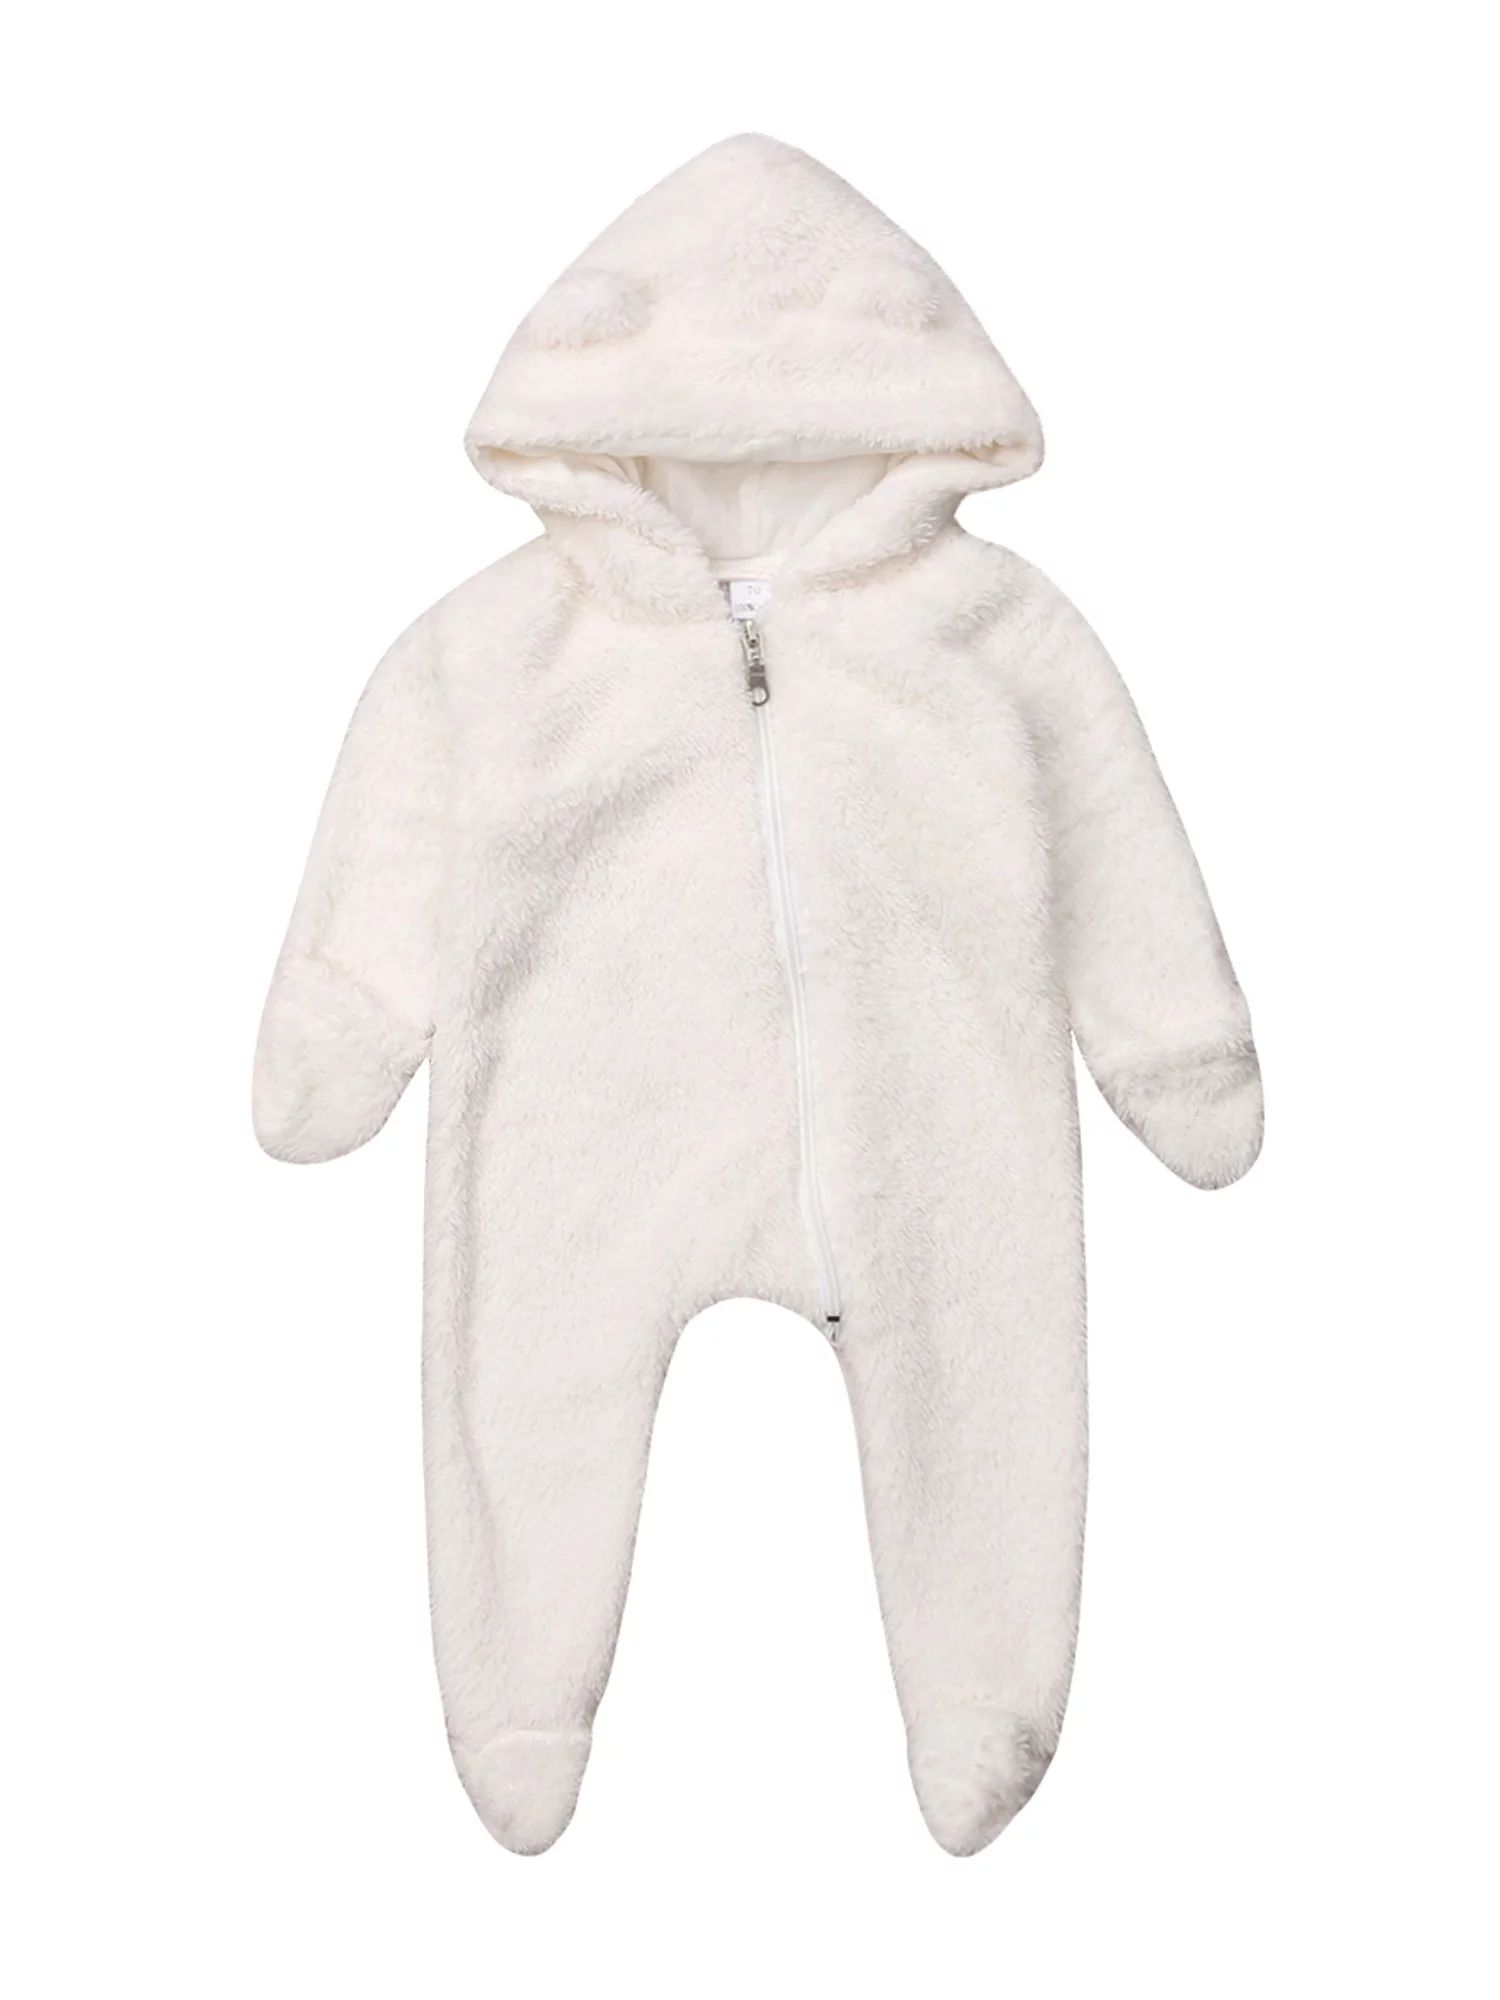 Fullvigor Newborn Baby Thicken Fleece Coveralls Romper Hooded Footies Bunting Onesie Snowsuit Out... | Walmart (US)